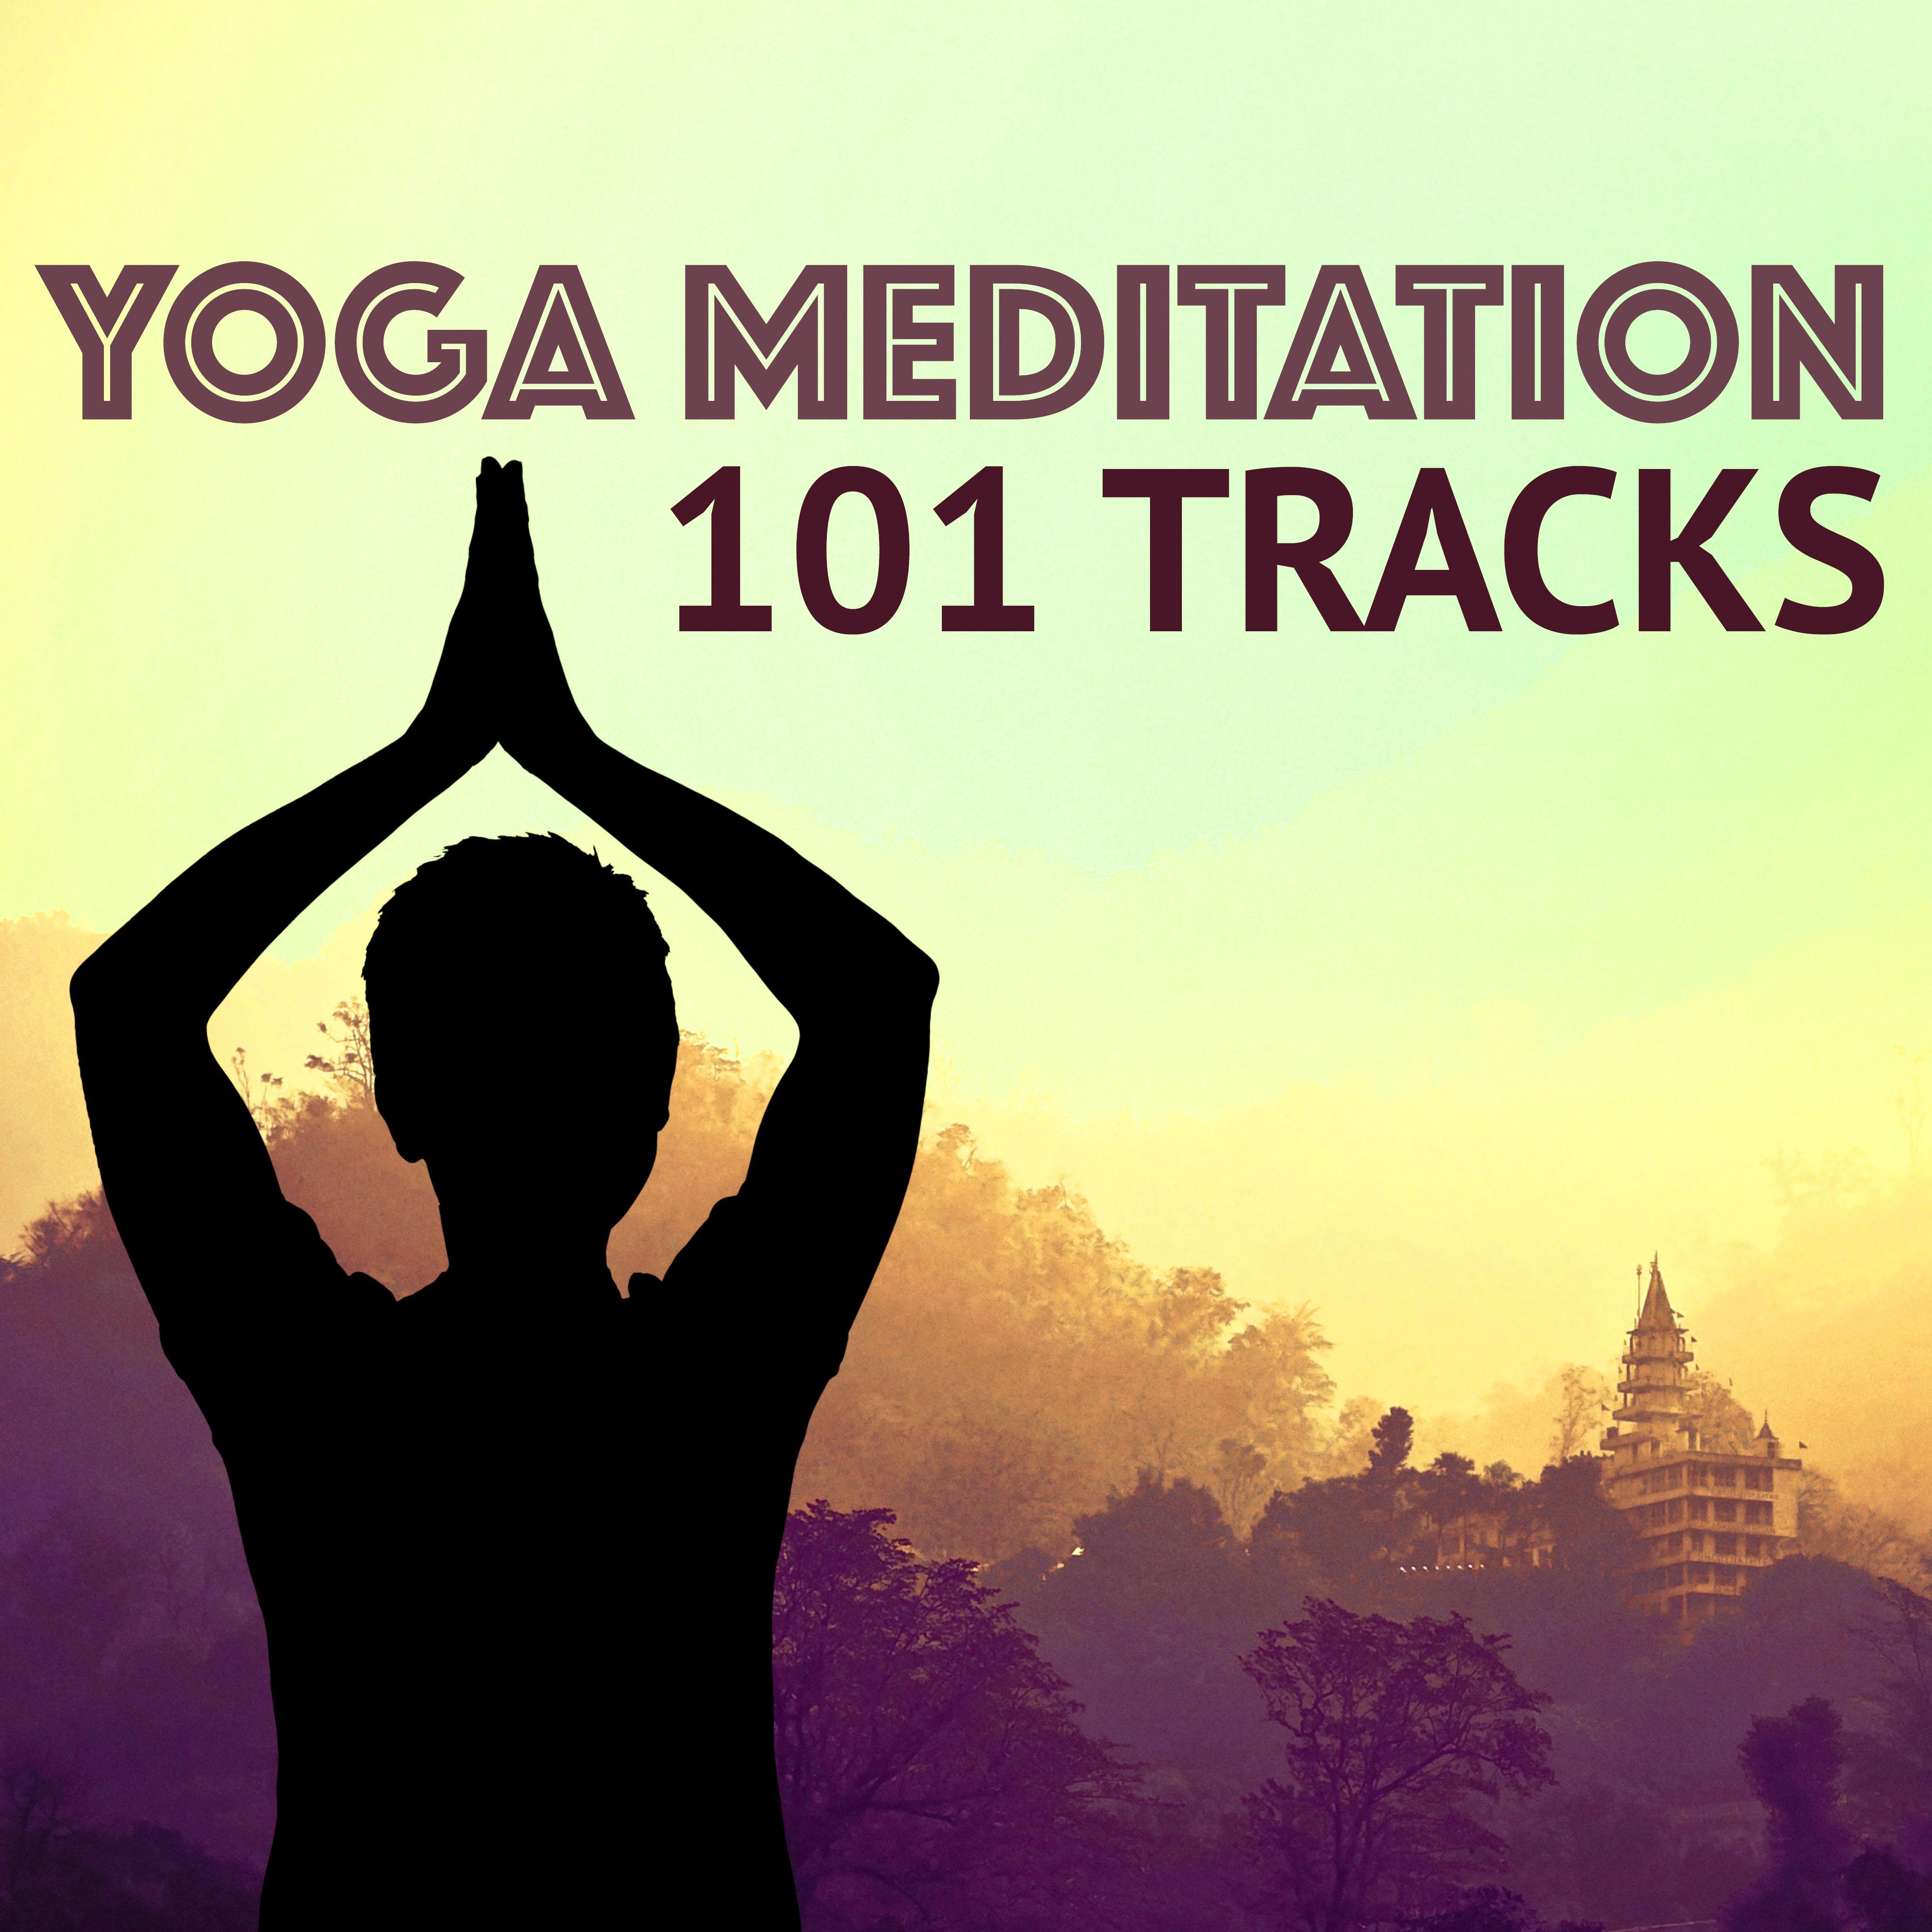 Chakra Meditation Balancing